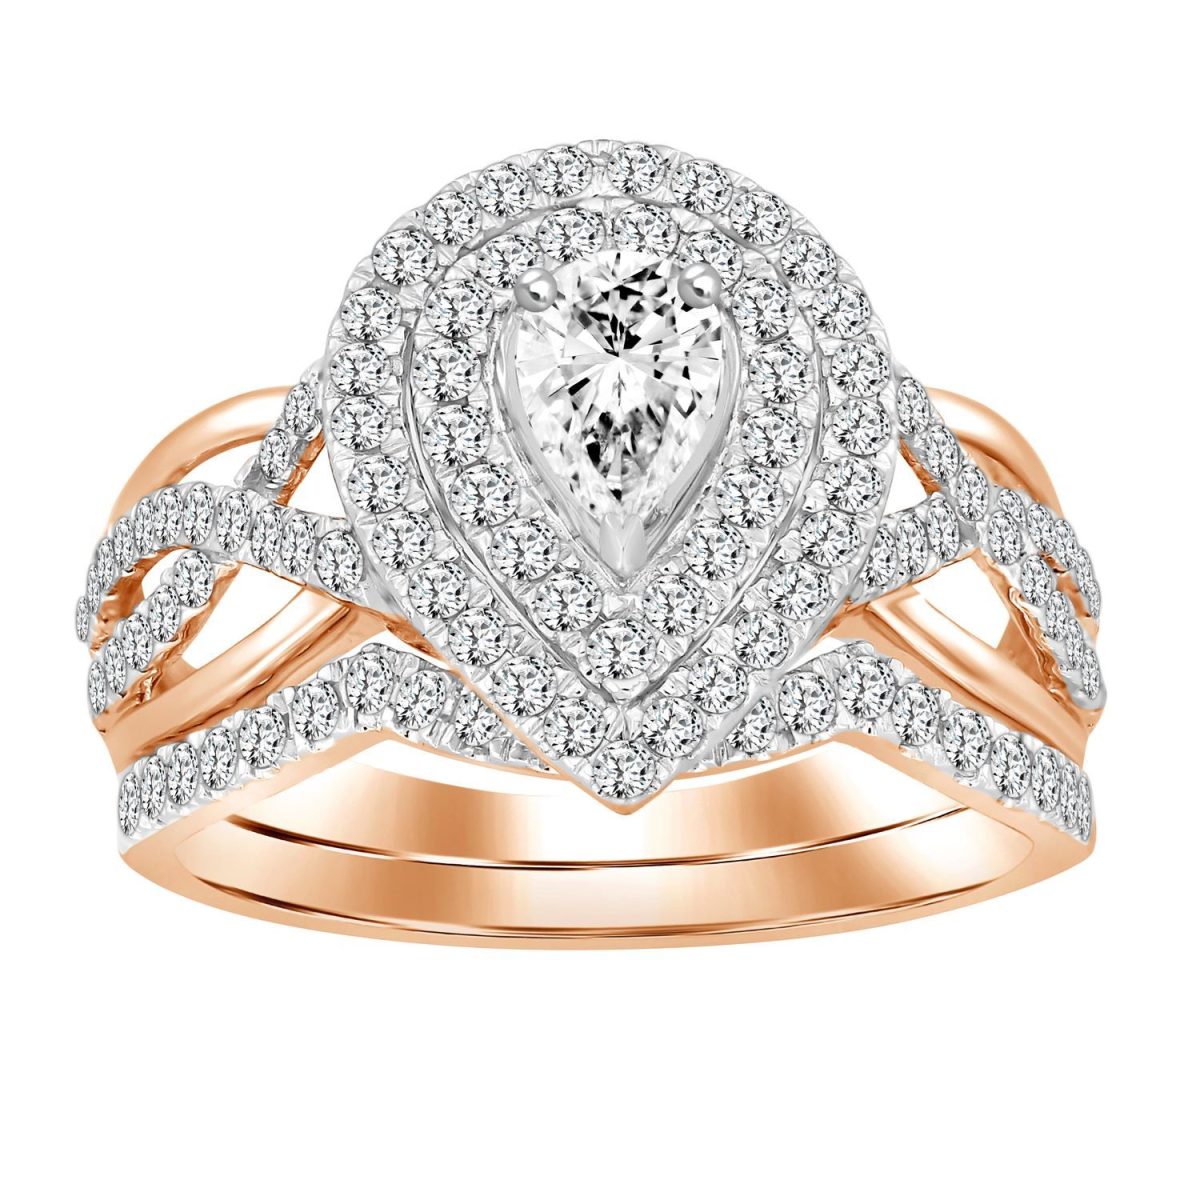 0020007 ladies bridal ring set 1 ct roundpear diamond 14k rose gold